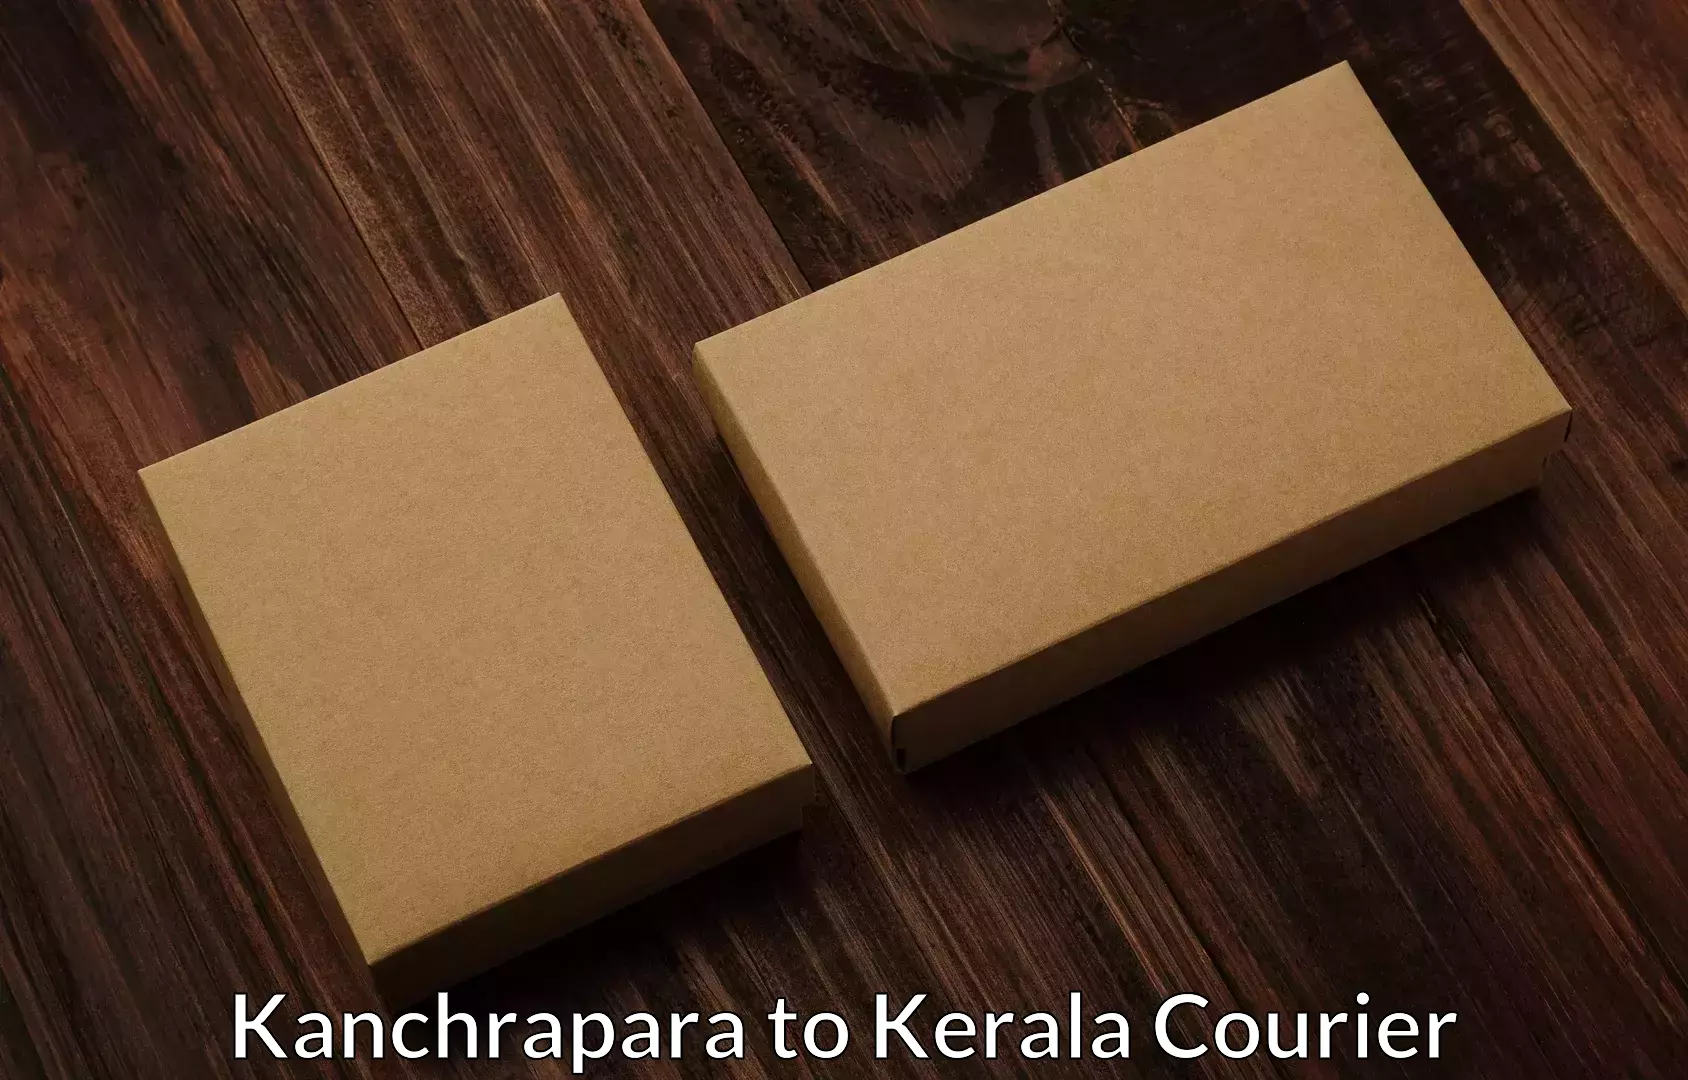 Moving service excellence Kanchrapara to Kerala